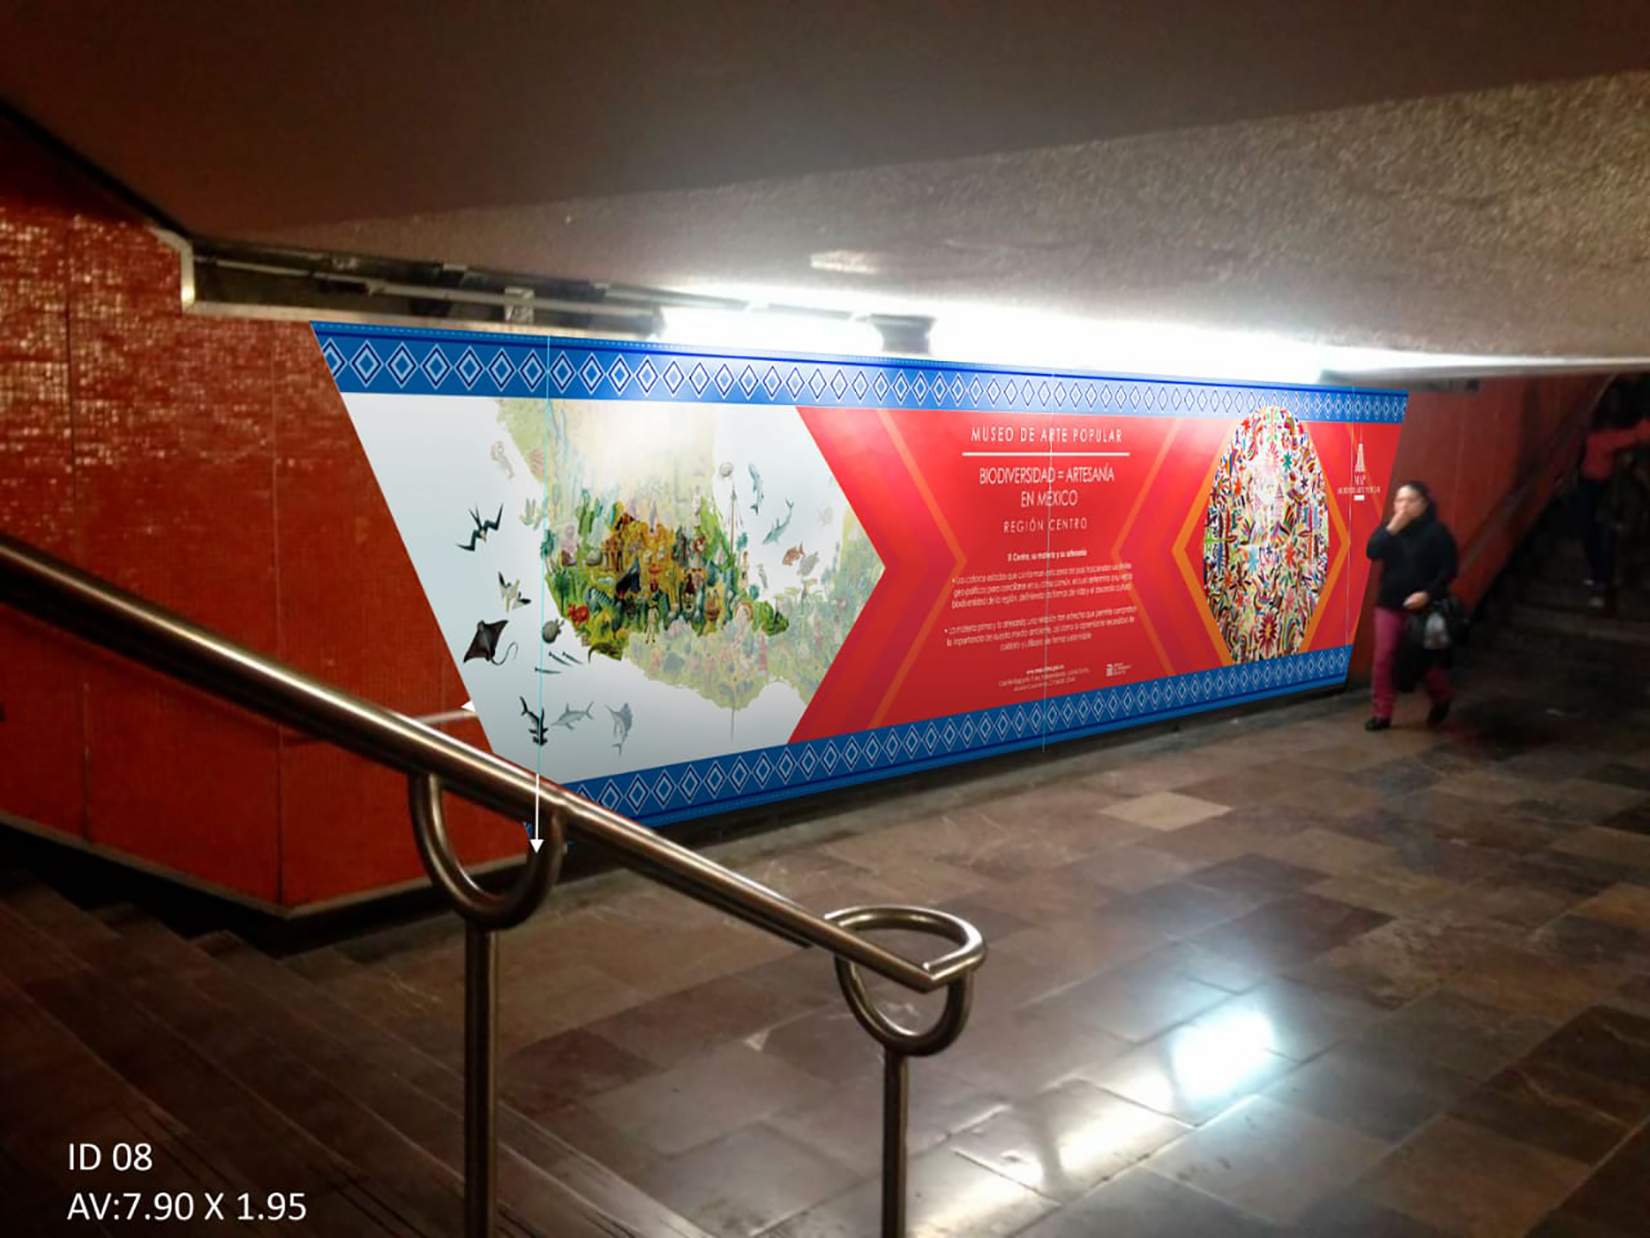 Interior de la estación de metro Juárez con información del Museo de Arte Popular del proyecto Estación Emblemática. (Foto: AmigosMAP). 